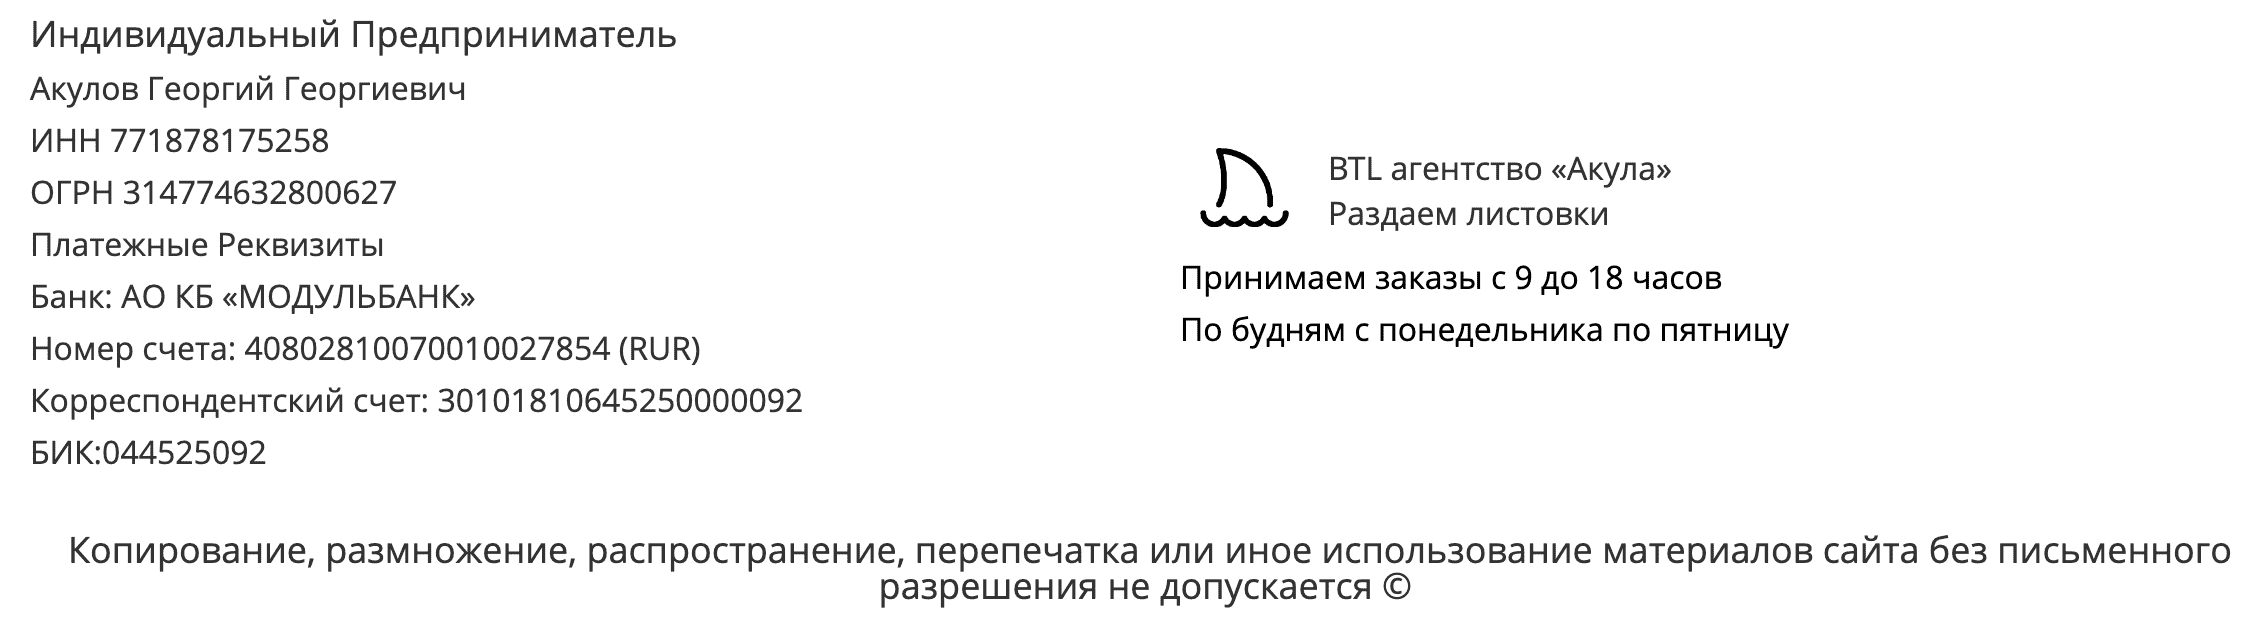 Реквизиты агентства по раздаче листовок Новосибирск